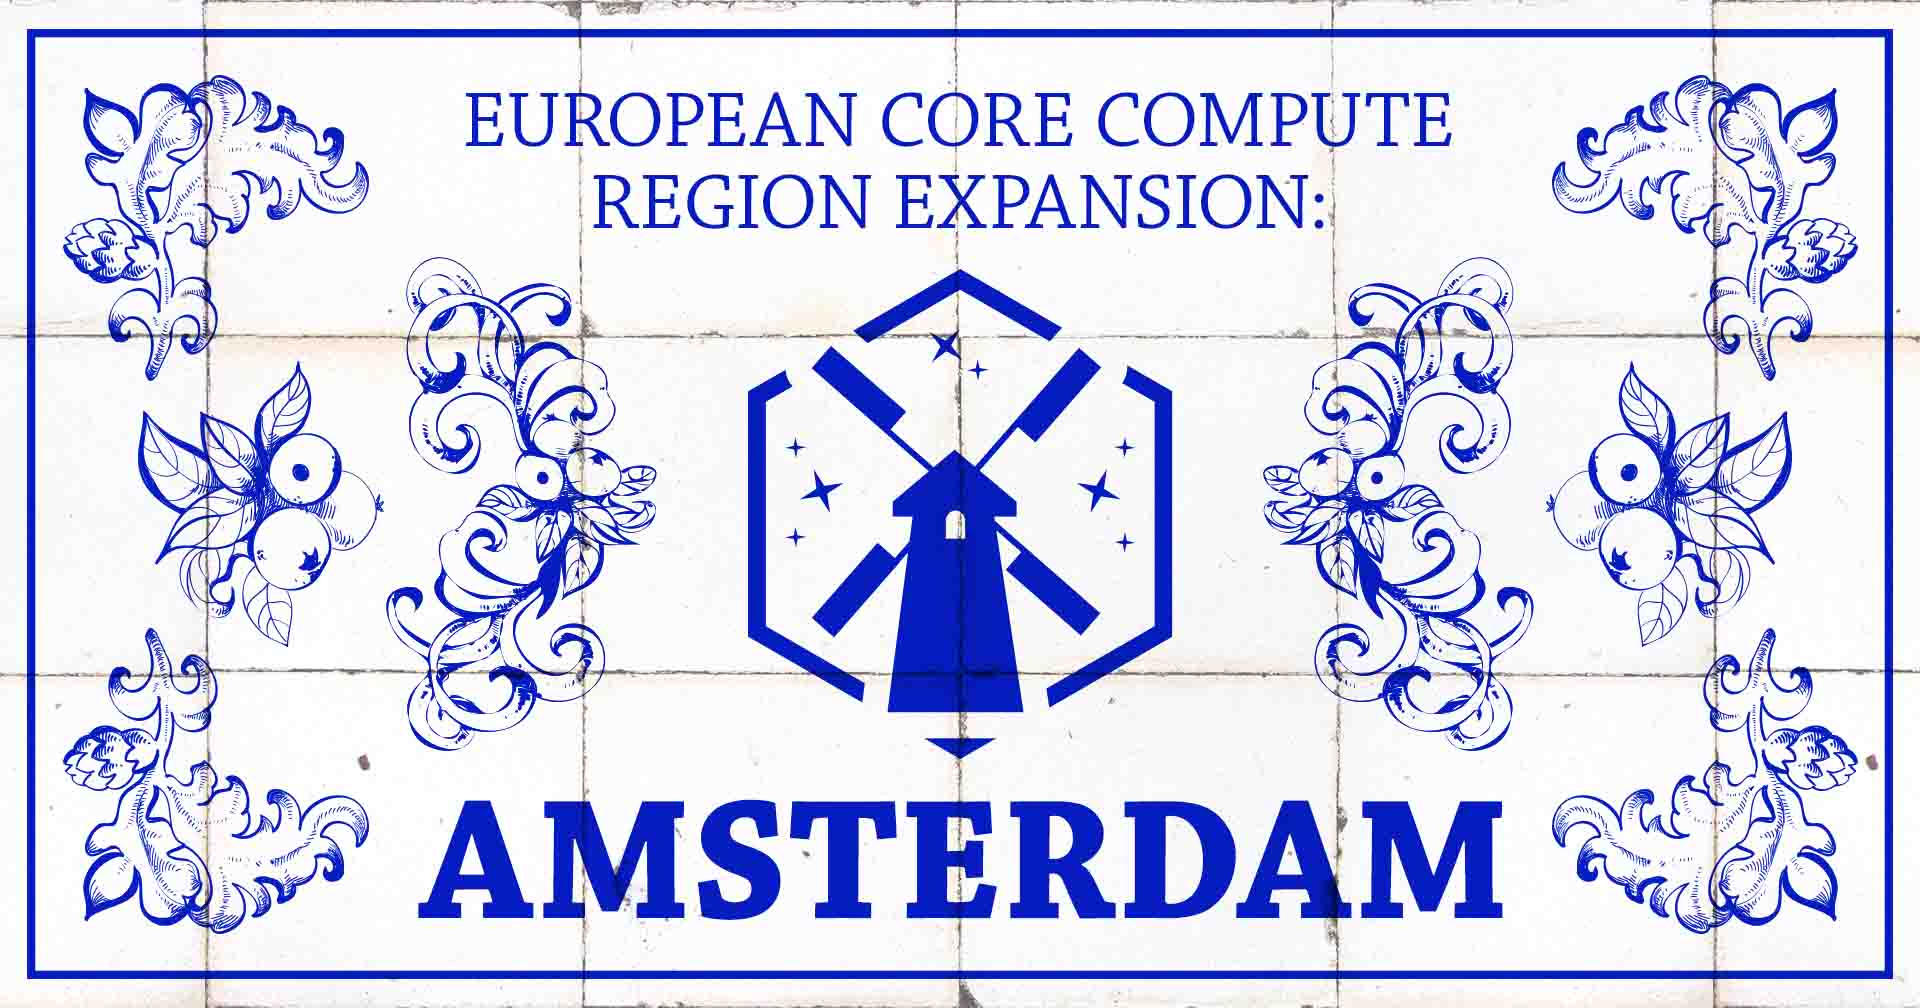 Image de l'expansion de la région européenne en direct à Amsterdam.